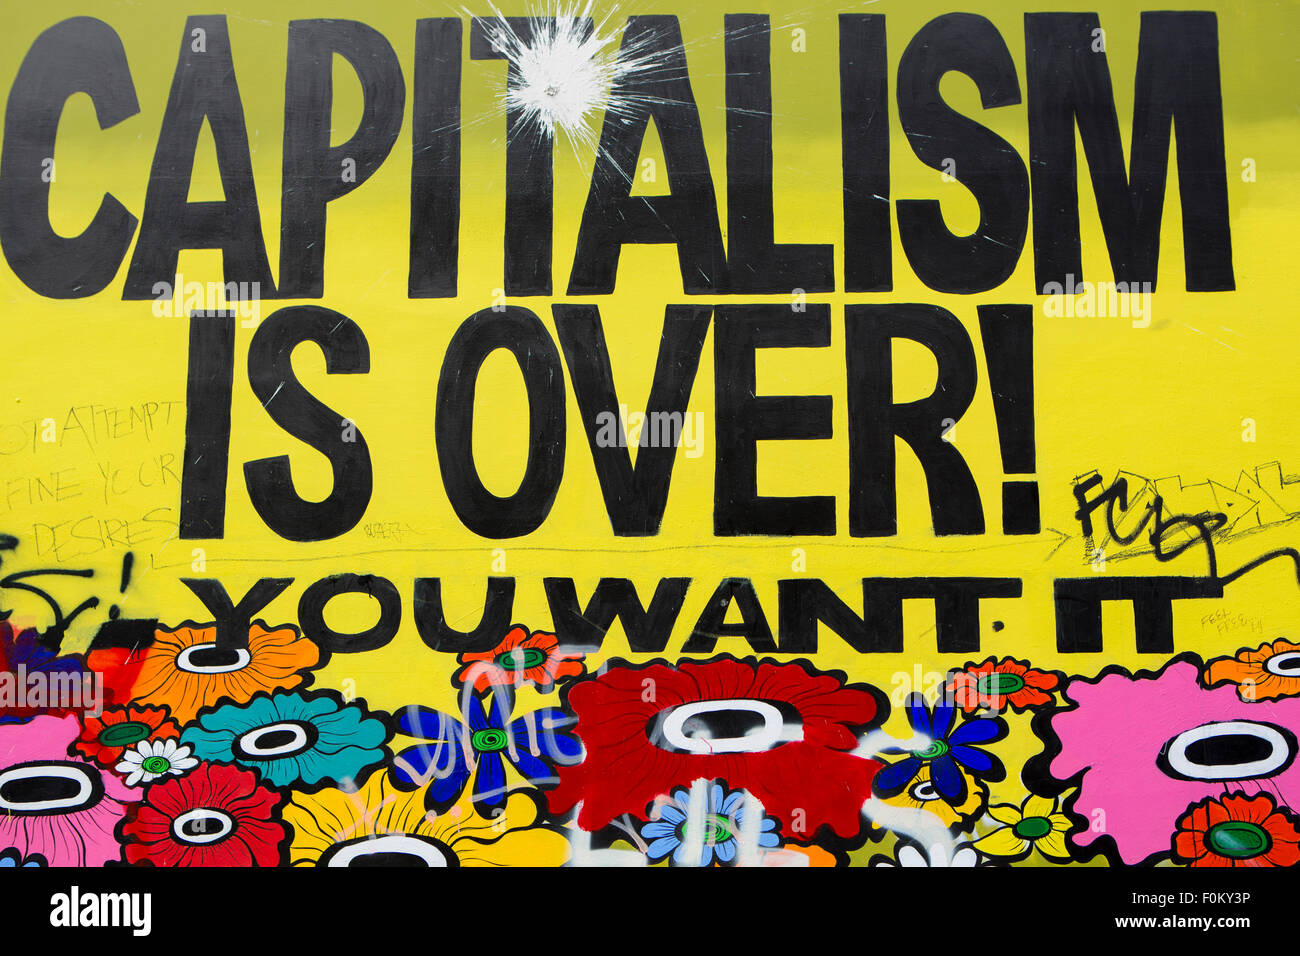 Kapitalismus ist vorbei! Sie will es... Zeichnung in San Francisco. Stockfoto